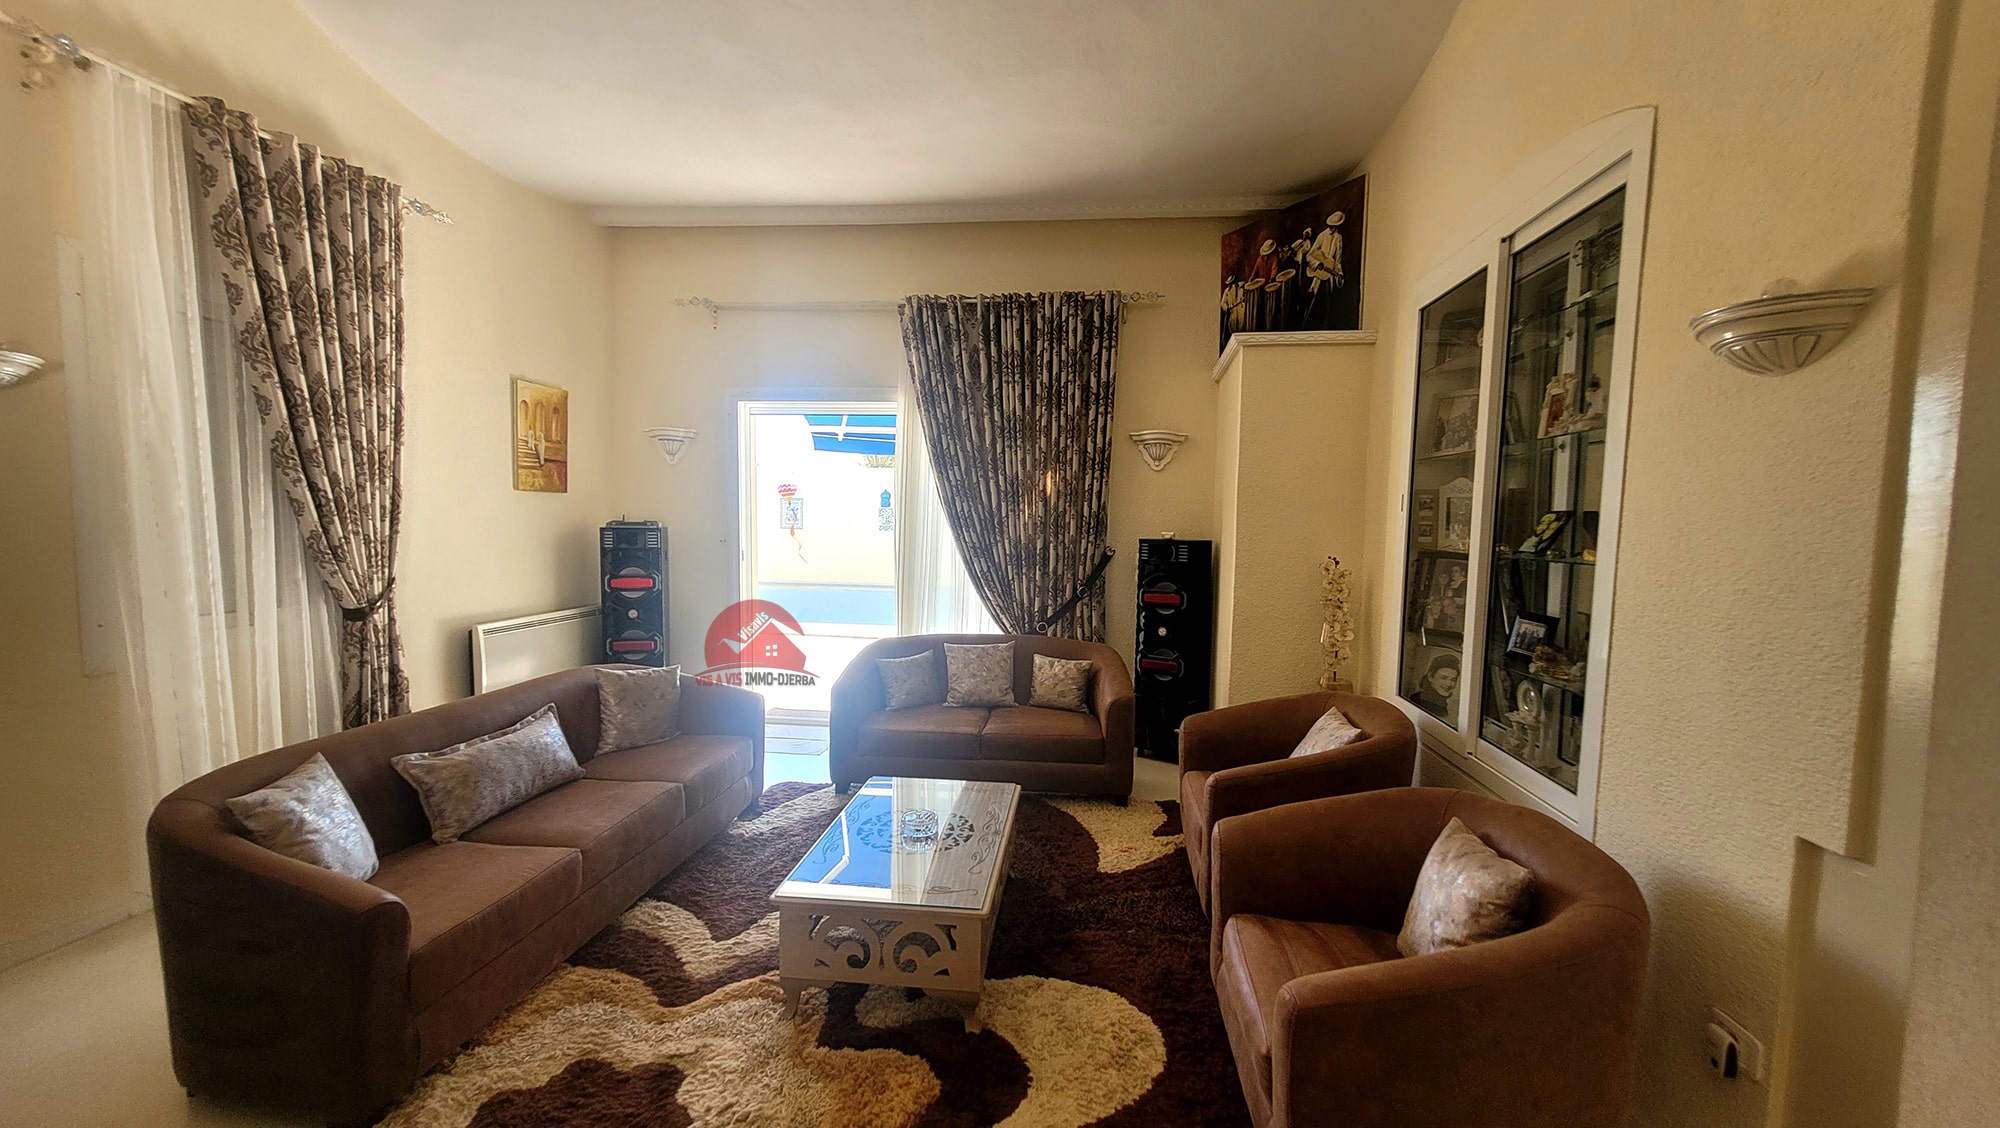 Djerba - Midoun Zone Hoteliere Vente Maisons Grande maison en zone touristique djerba  ref v590